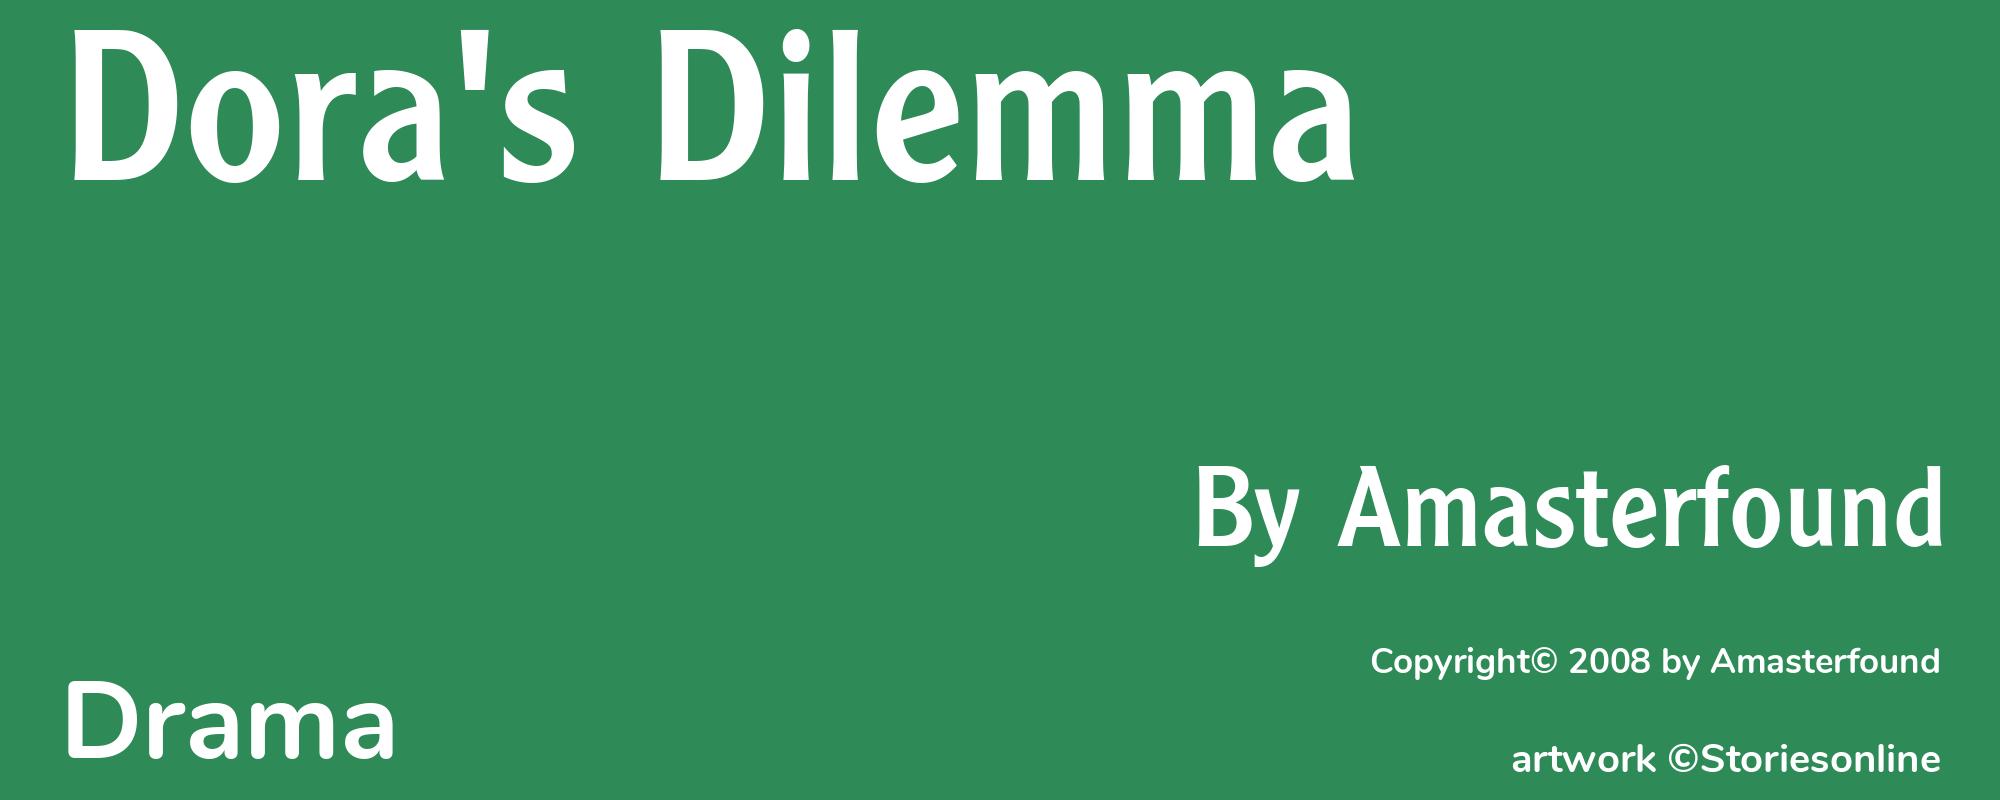 Dora's Dilemma - Cover